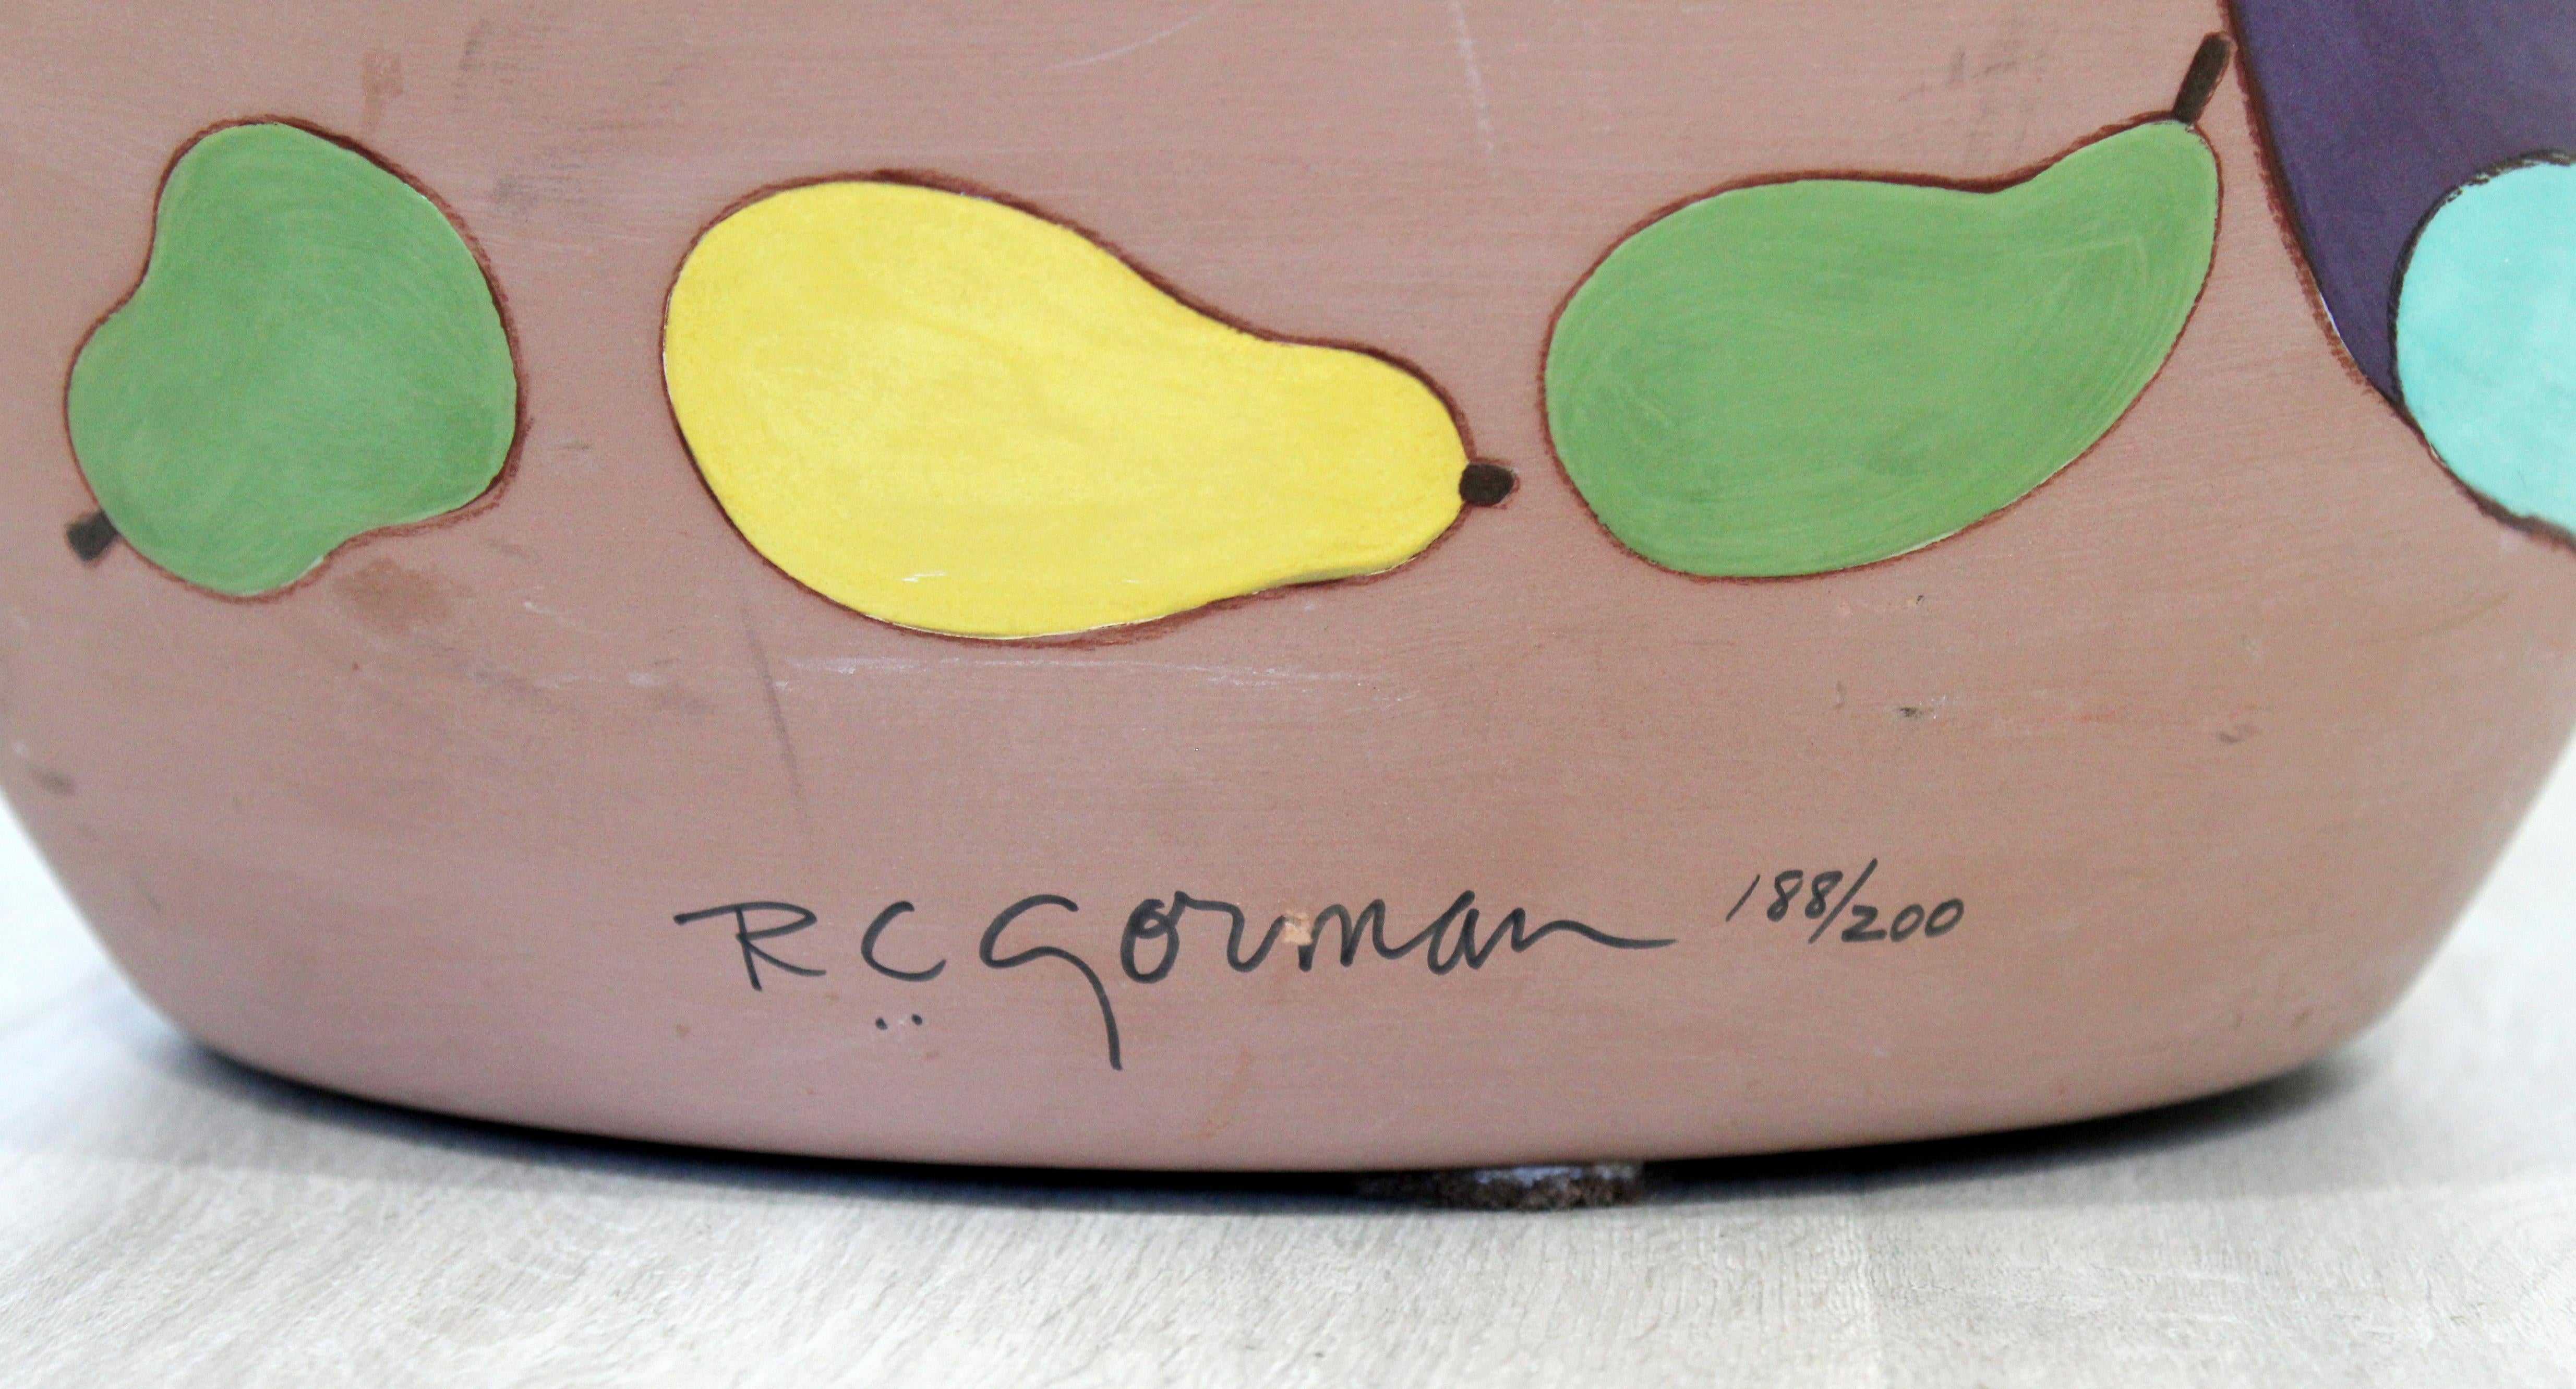 Contemporary Massive Large Ceramic Art Vessel Signed R.C. Gorman Peras, 1980s 3